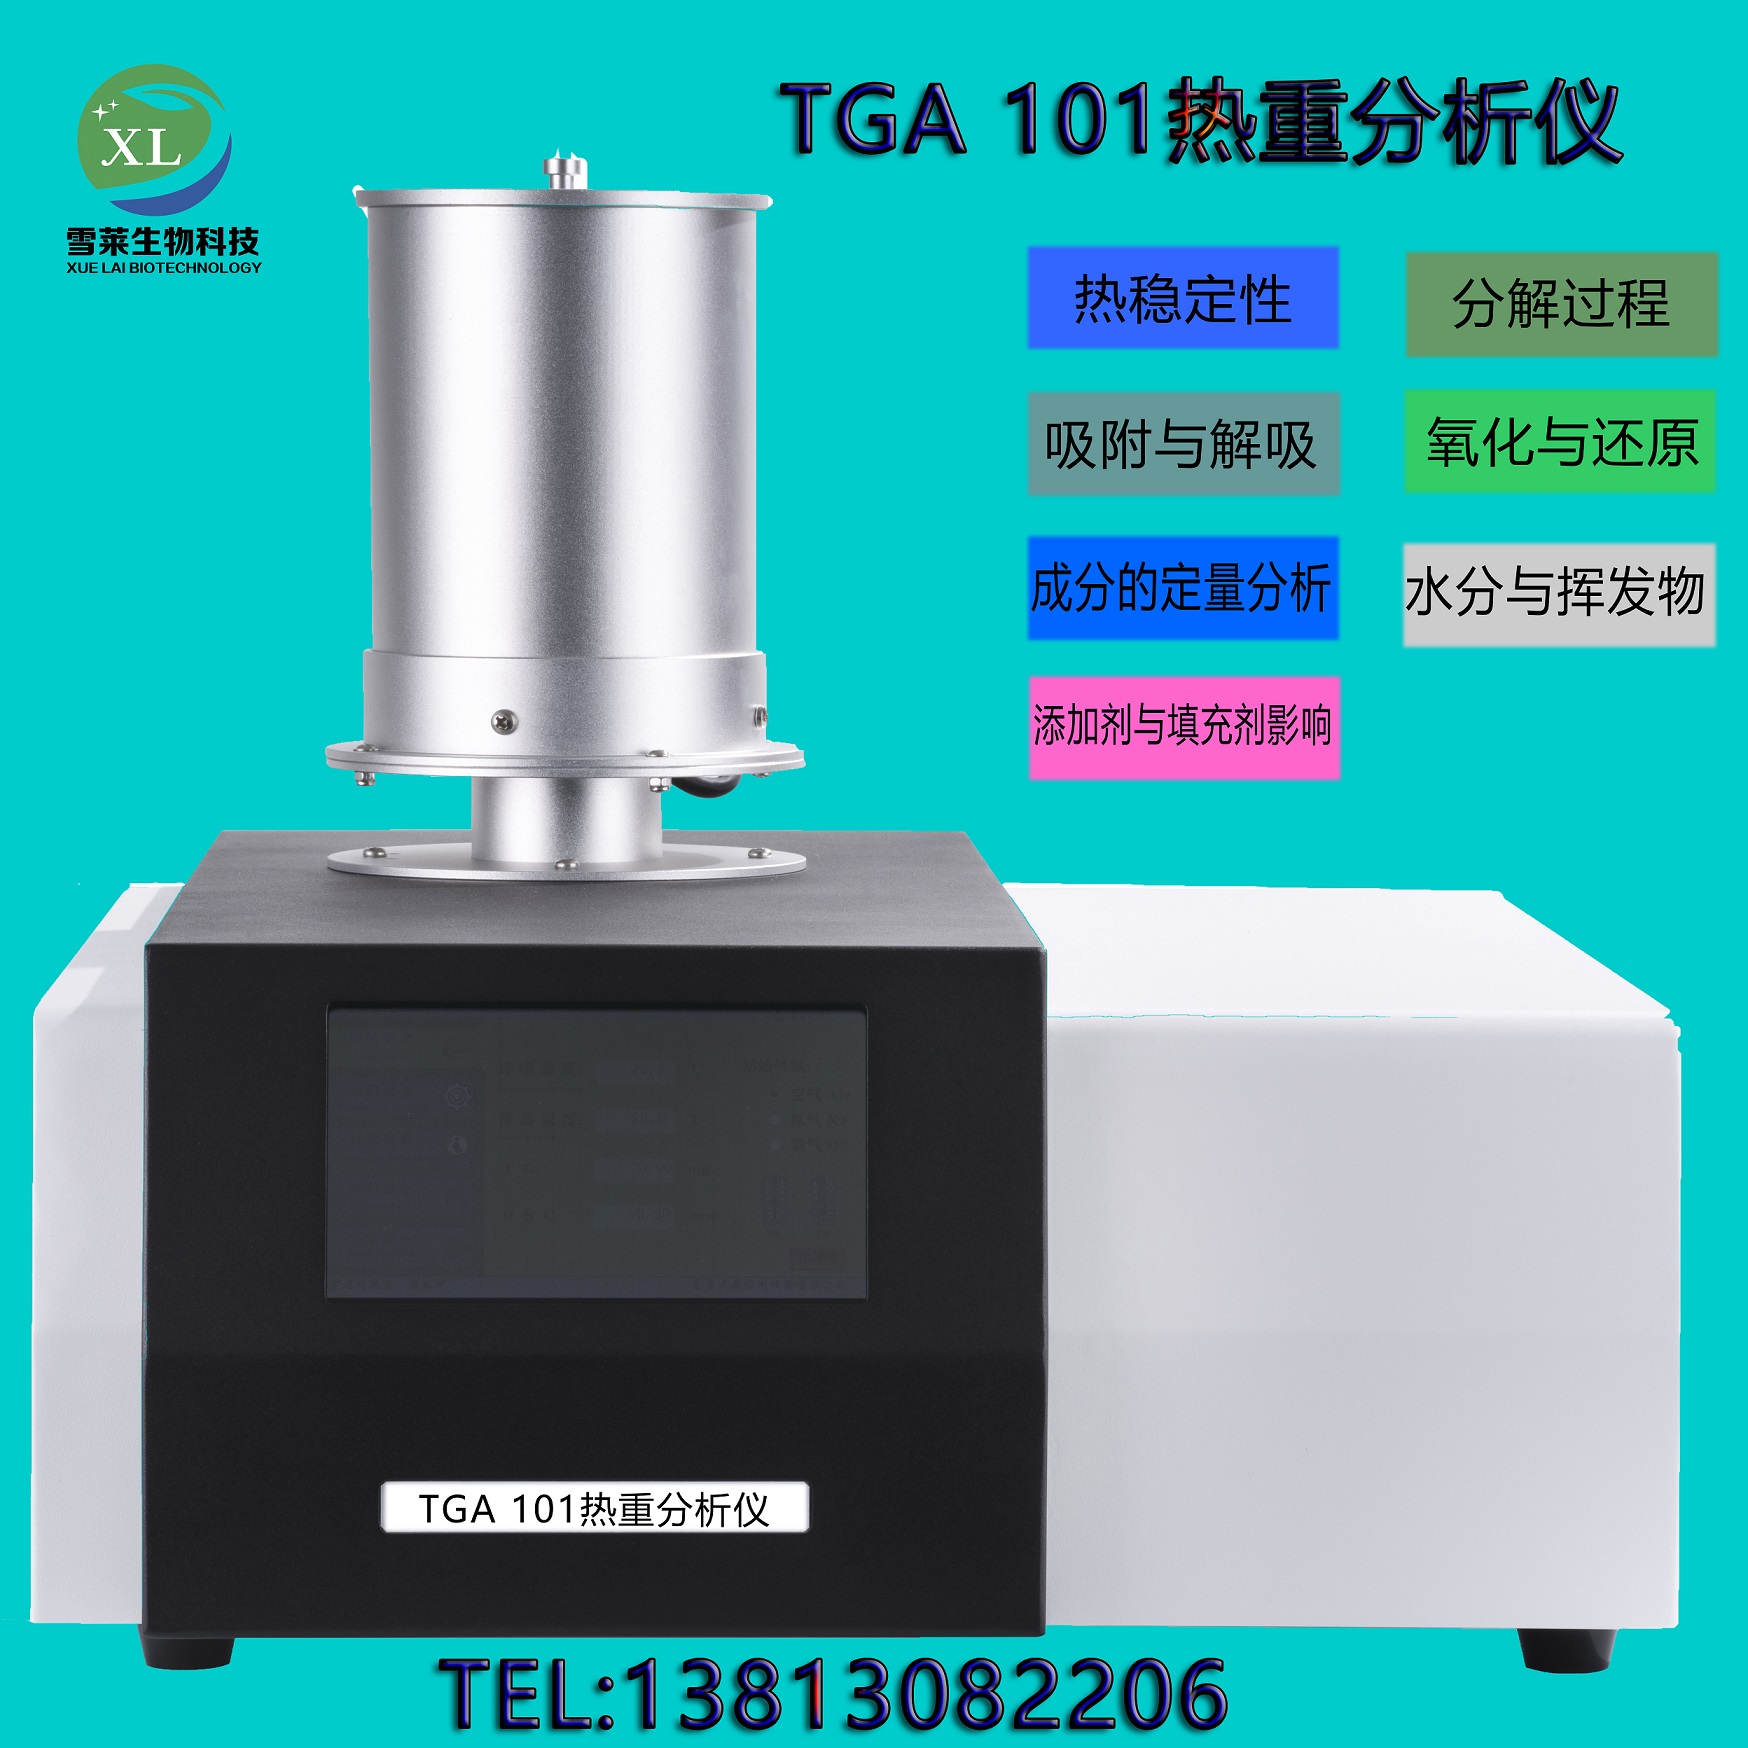 TGA 101 热重分析仪 南京雪莱生物科技有限公司(图1)